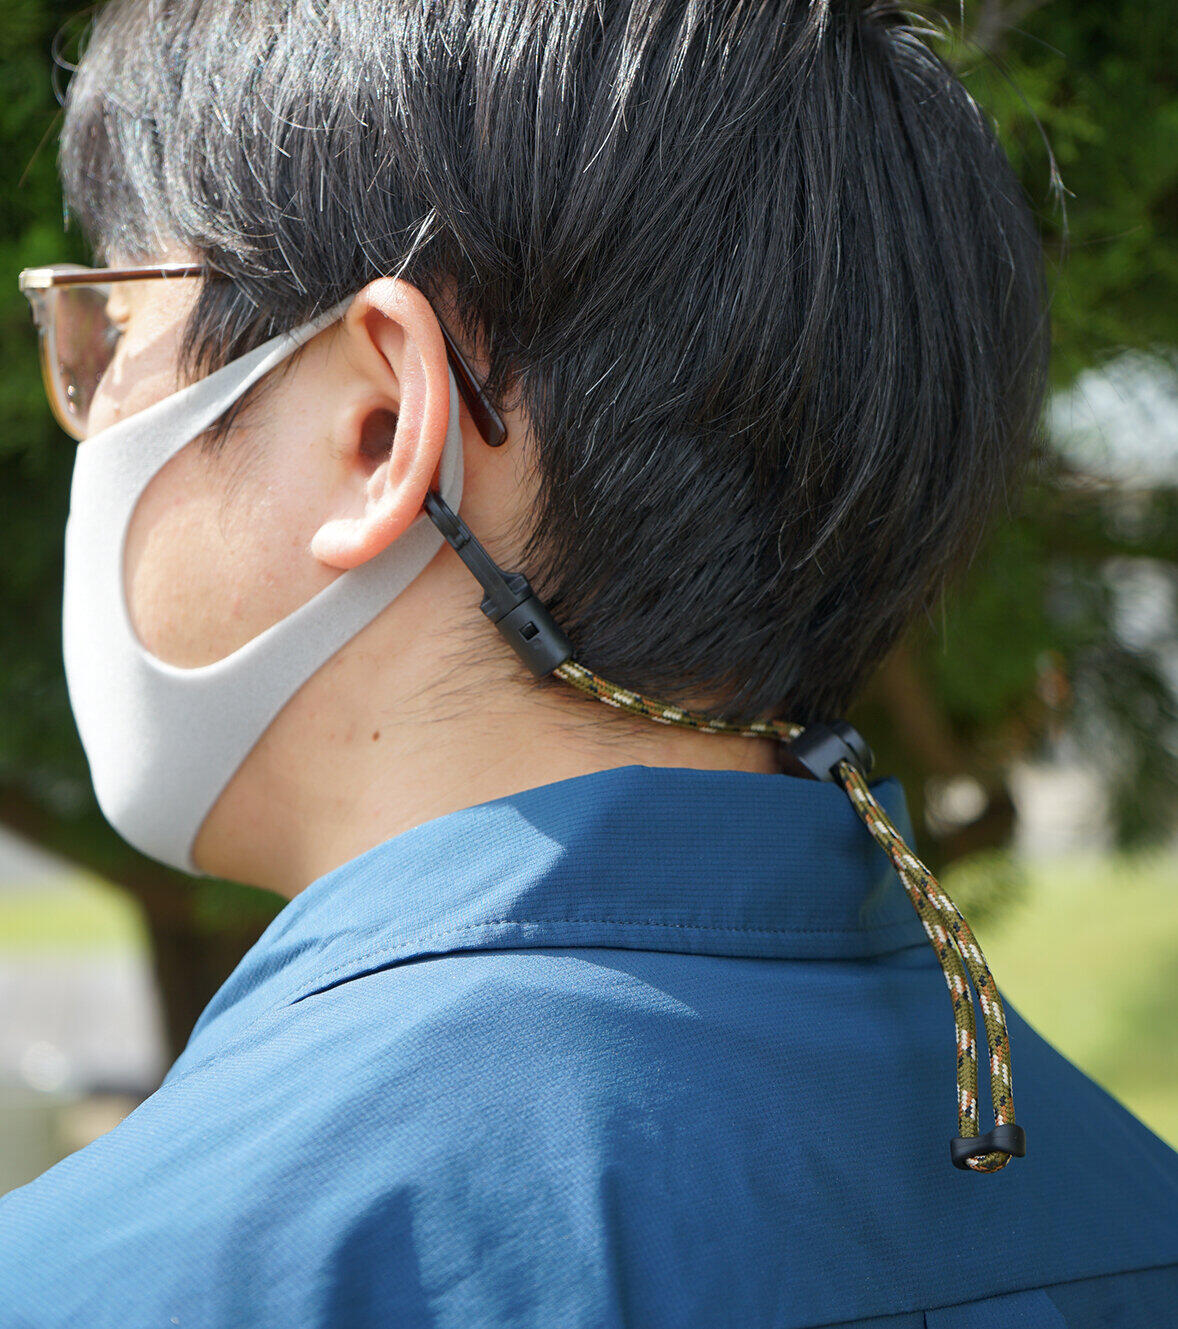 マスク着用時には頭の後ろで固定して使用可能